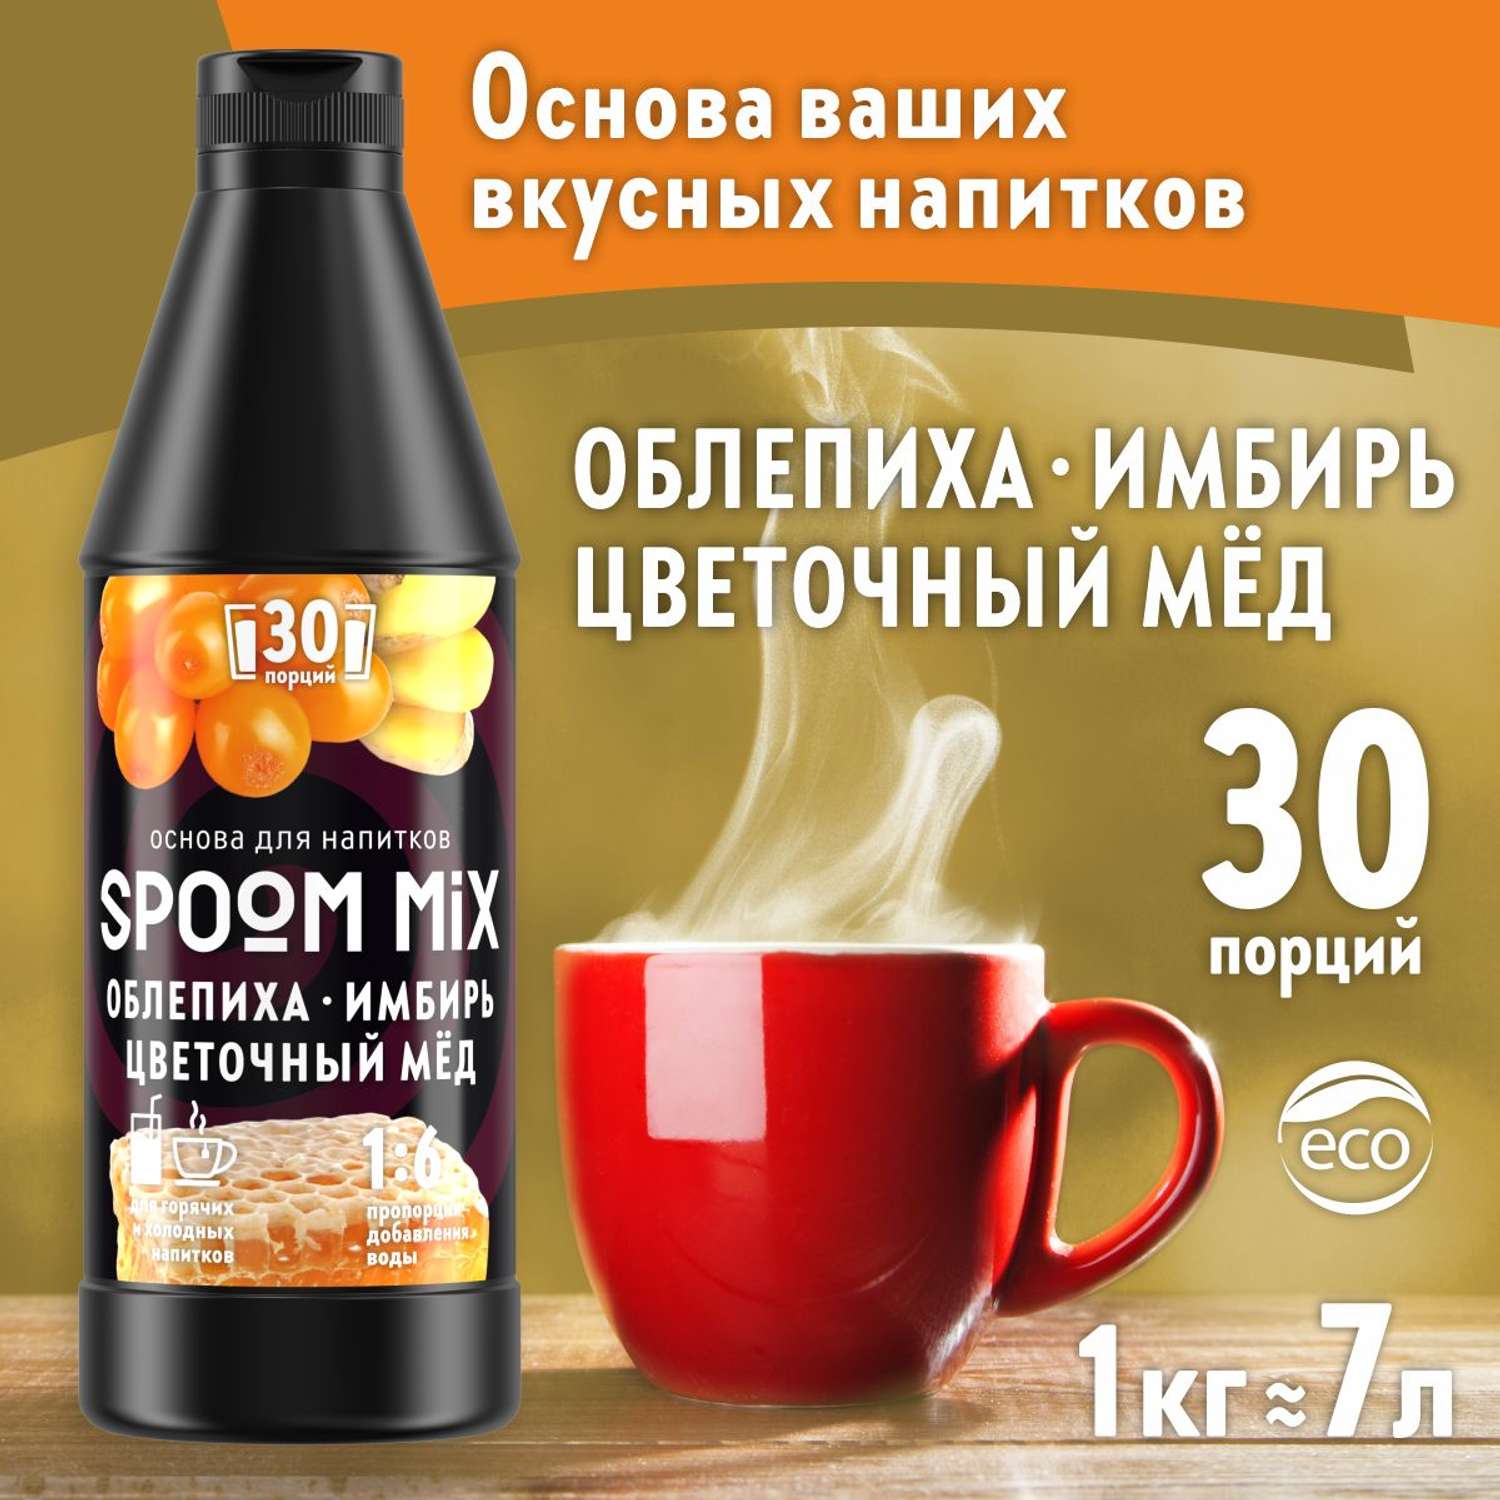 Основа для напитков SPOOM MIX Облепиха имбирь цветочный мёд 1 кг - фото 1